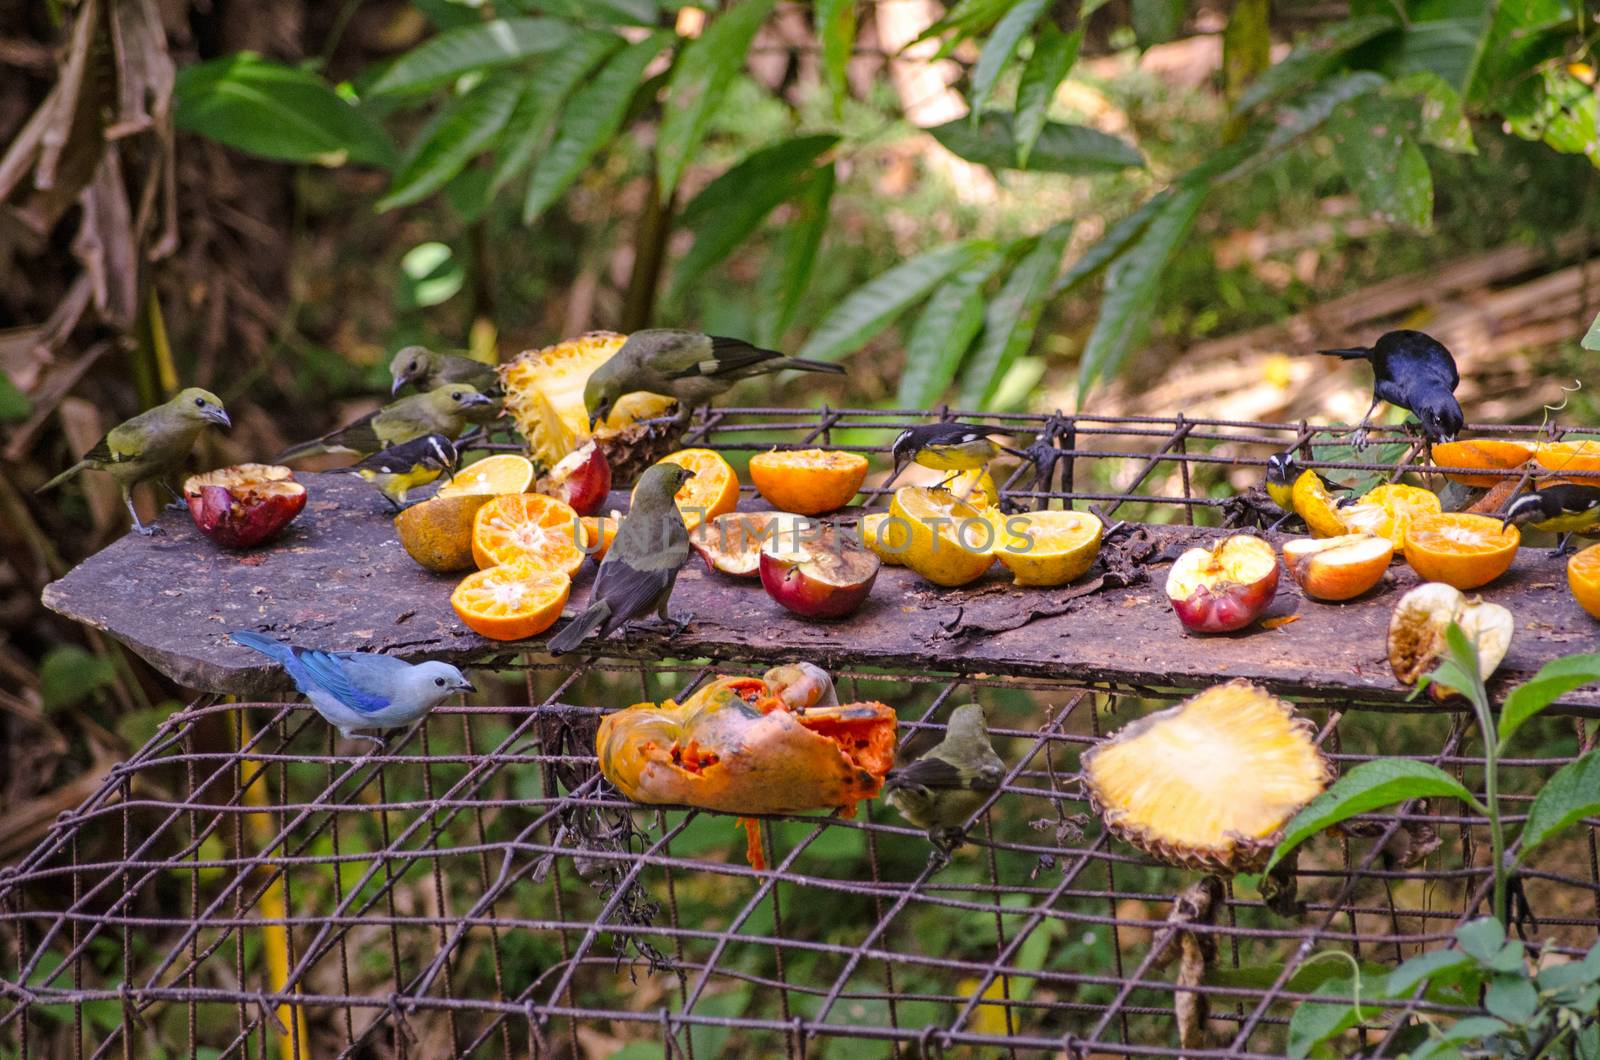 Tropical Bird Table, Tobago by BasPhoto